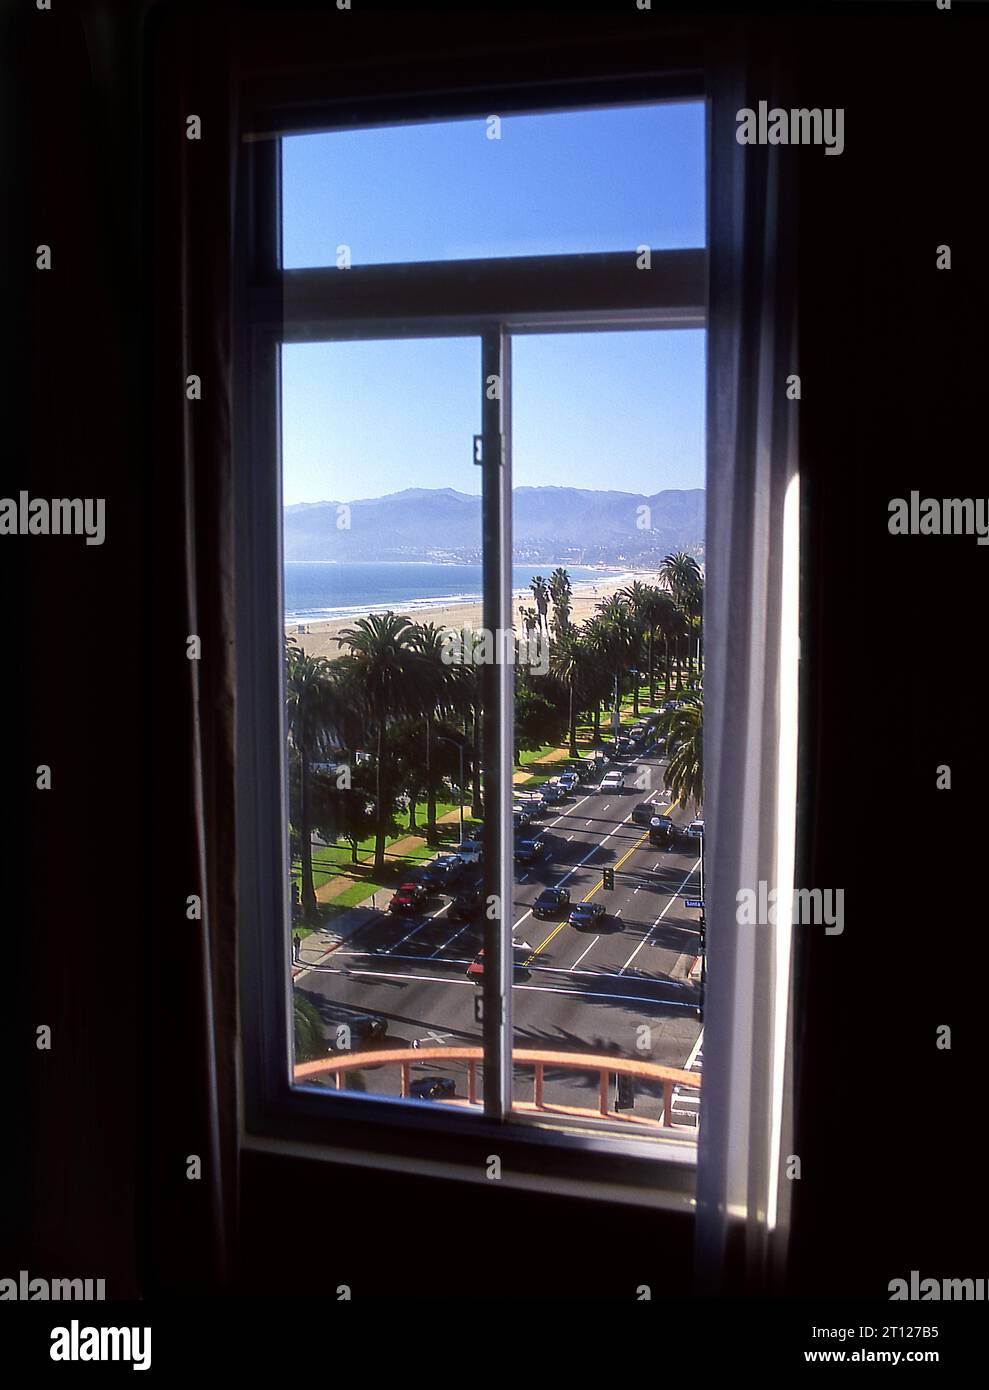 Vue sur la côte à Santa Monica looikng nord d'une vue dans une fenêtre de chambre d'hôtel. Los Angeles, Californie Banque D'Images